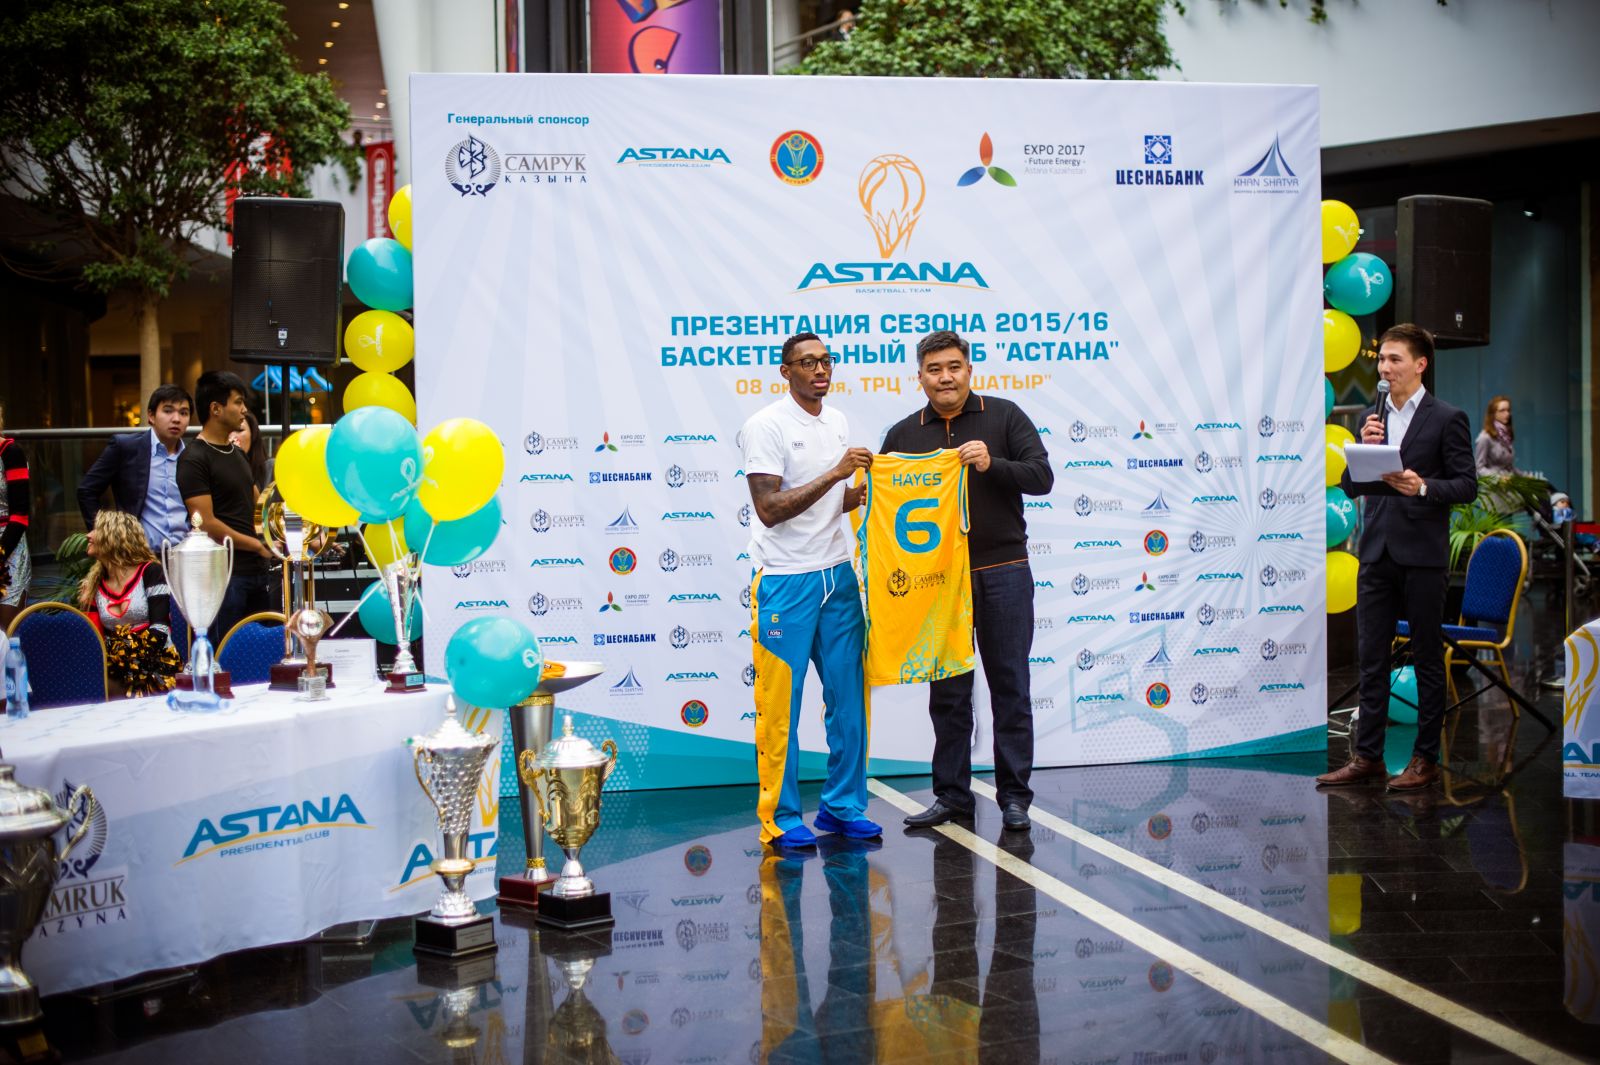 Открытие сезона 2015/2016 баскетбольного клуба «Астана»